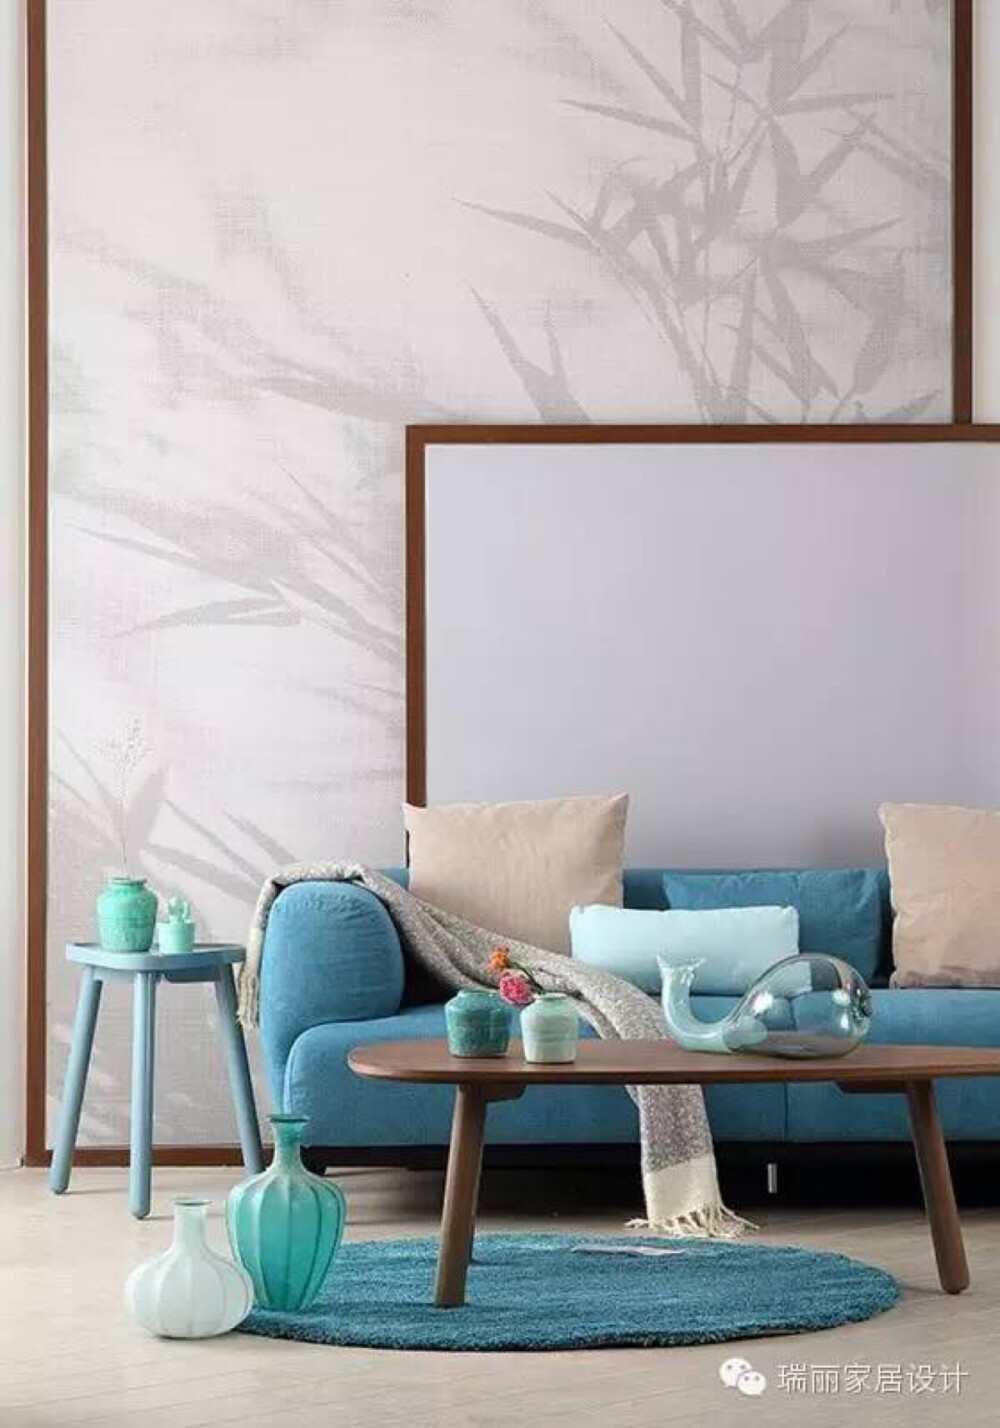 象征君子的竹子图案做背景墙是中式元素的巧妙运用，通过不同色度的灰色搭配更有韵味。白色和木色在背景墙上的运用打破了图案的单一，湖蓝色沙发、地毯与浅蓝色边几及各种蓝色花器形成呼应，一抹湖蓝恰到好处地体现了年轻感。